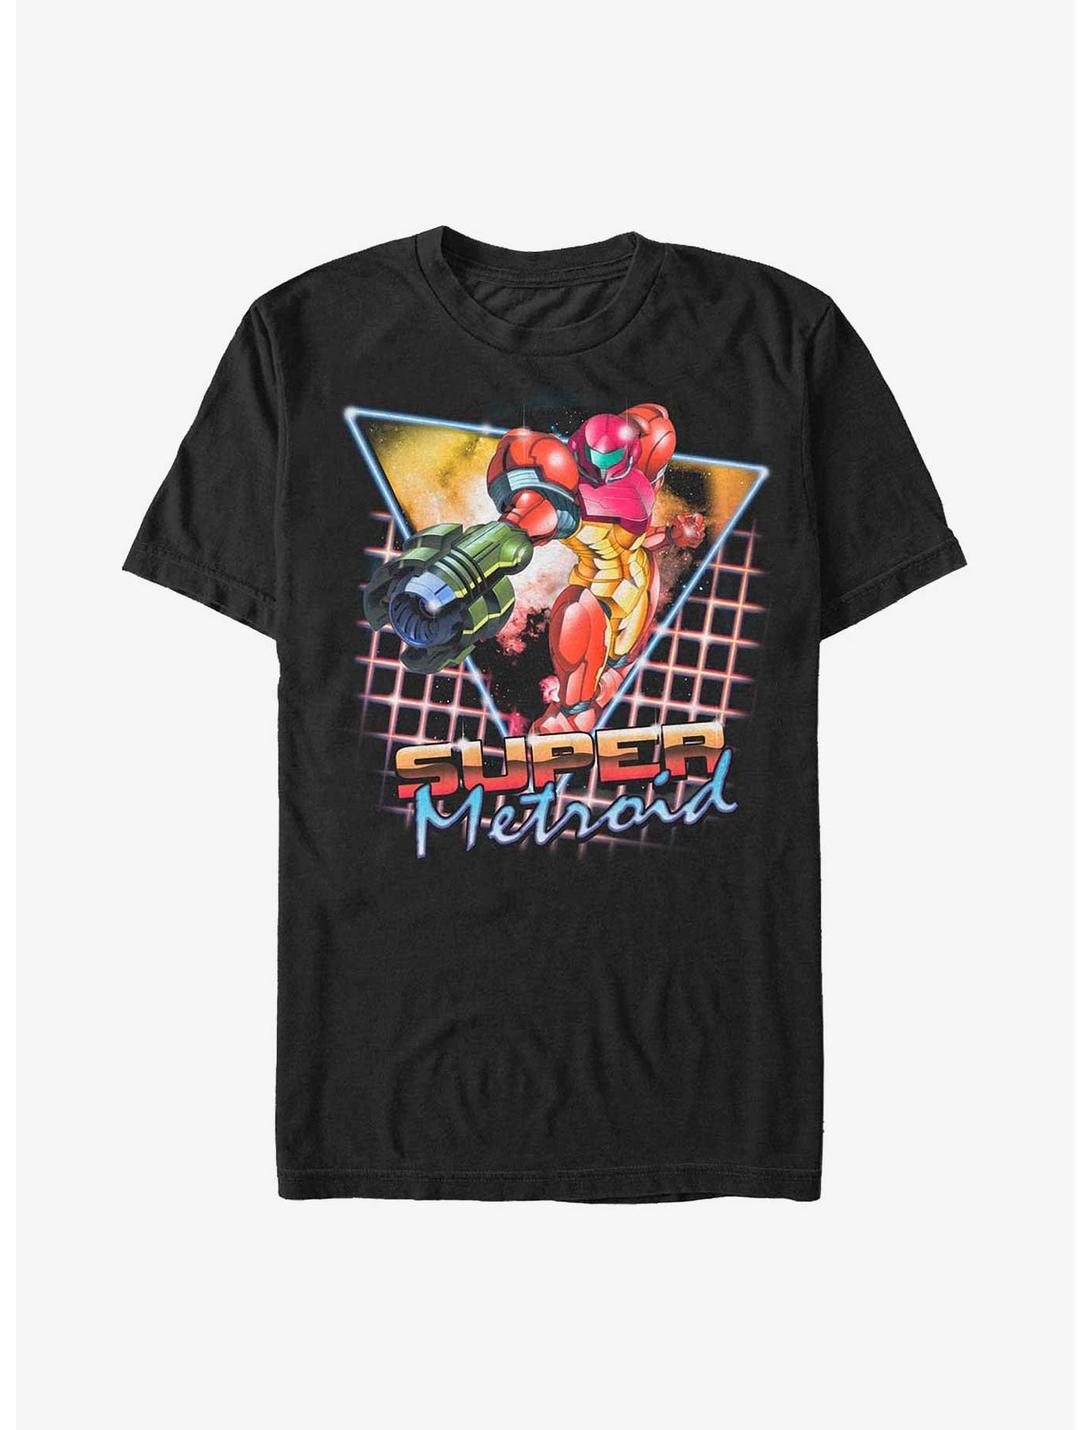 Nintendo Metroid Retro Super Metroid T-Shirt, BLACK, hi-res